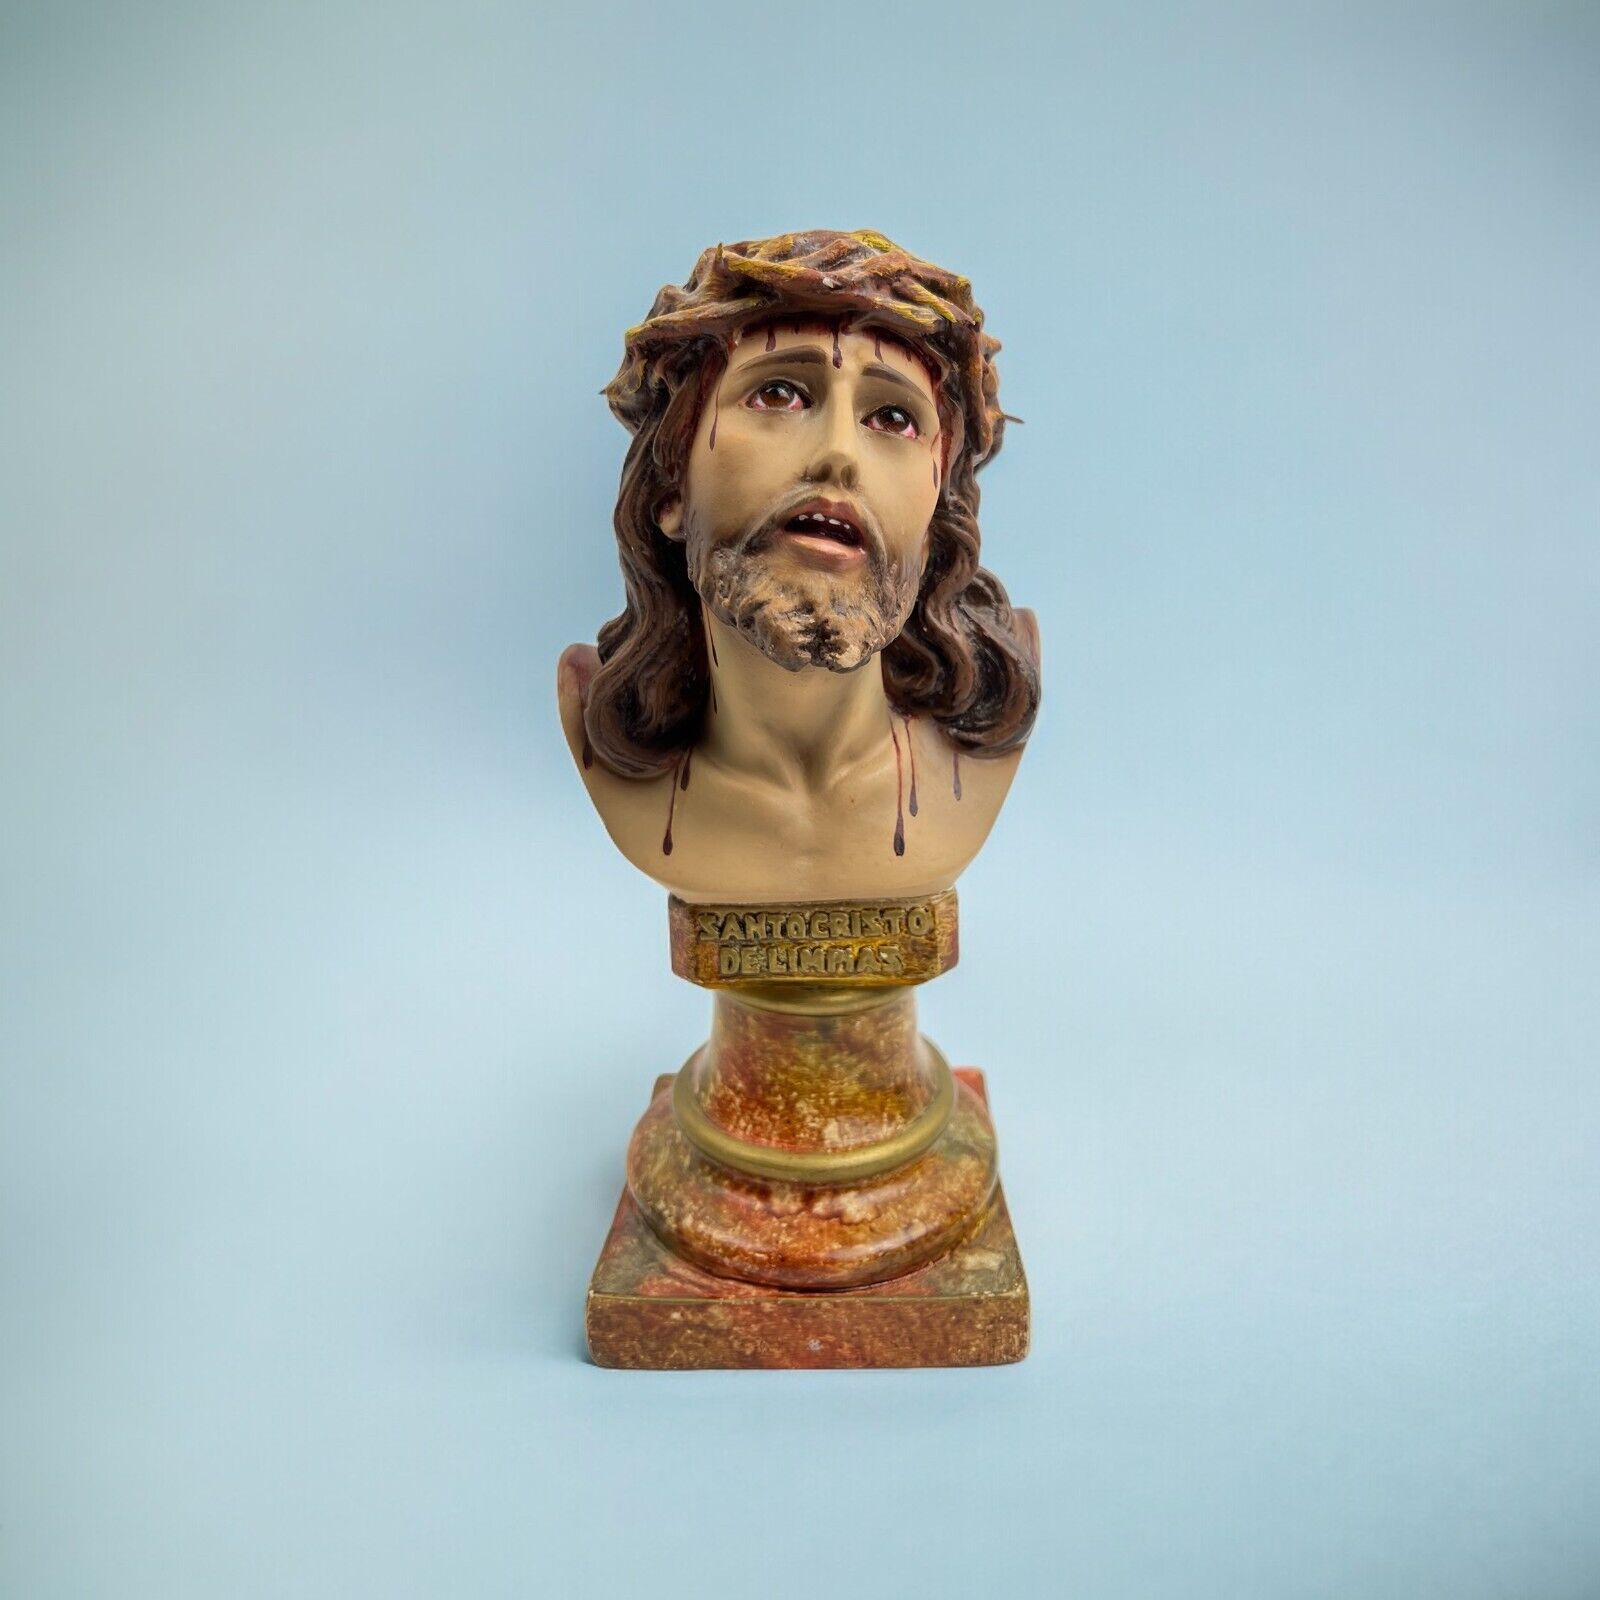 Christ Bust Figure Crown of Thorns 1967 Santo Cristo de Limpias Vintage Religion